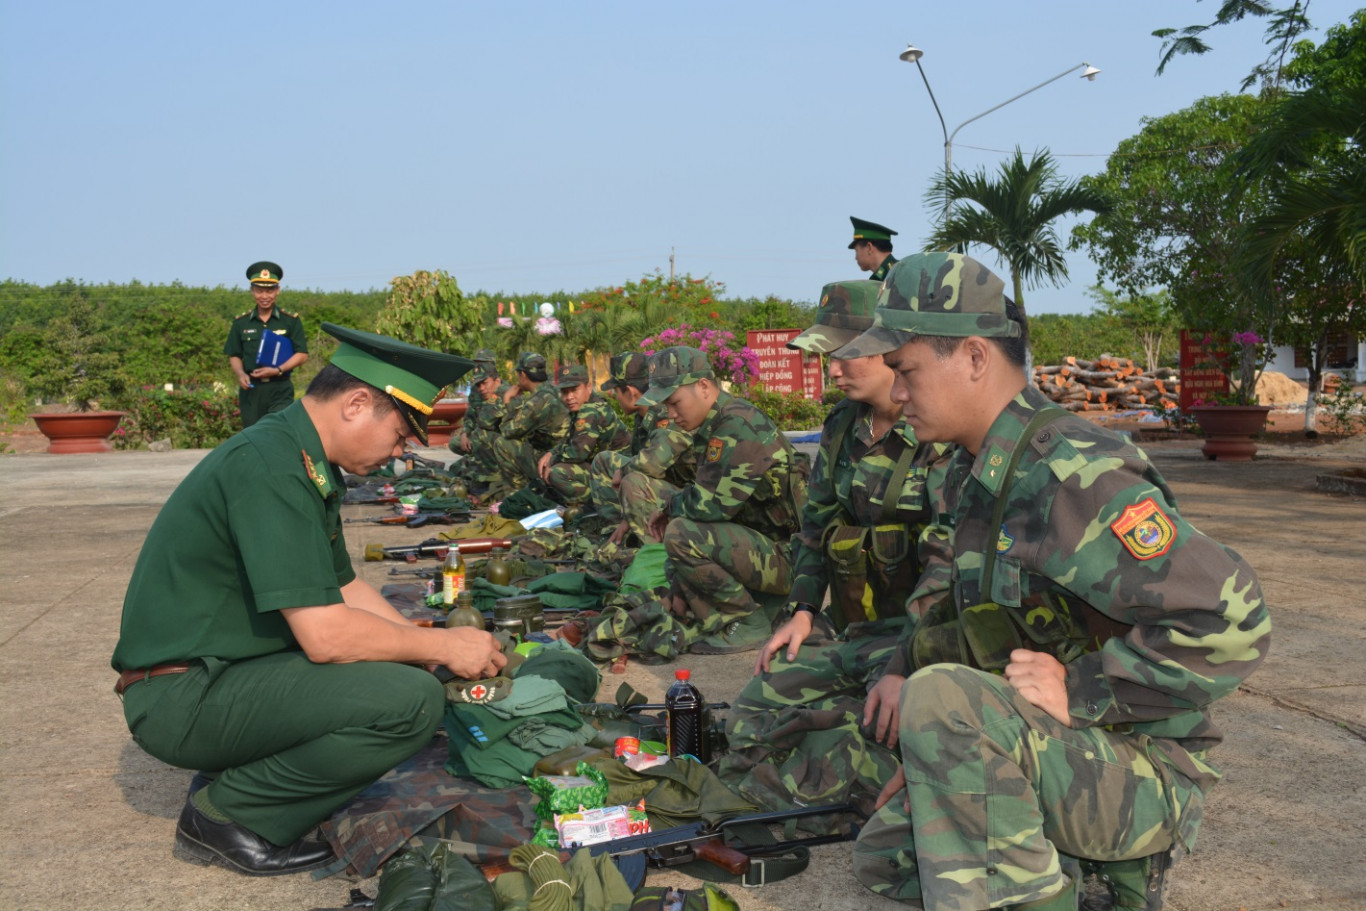 Thượng tá Nguyễn Hải Lưu, Phó Tham mưu trưởng BĐBP Bình Phước kiểm tra vật chất và cách sắp xếp vật chất trong ba lô hành quân tuần tra tại đồn Biên phòng cửa khẩu Hoàng Diệu